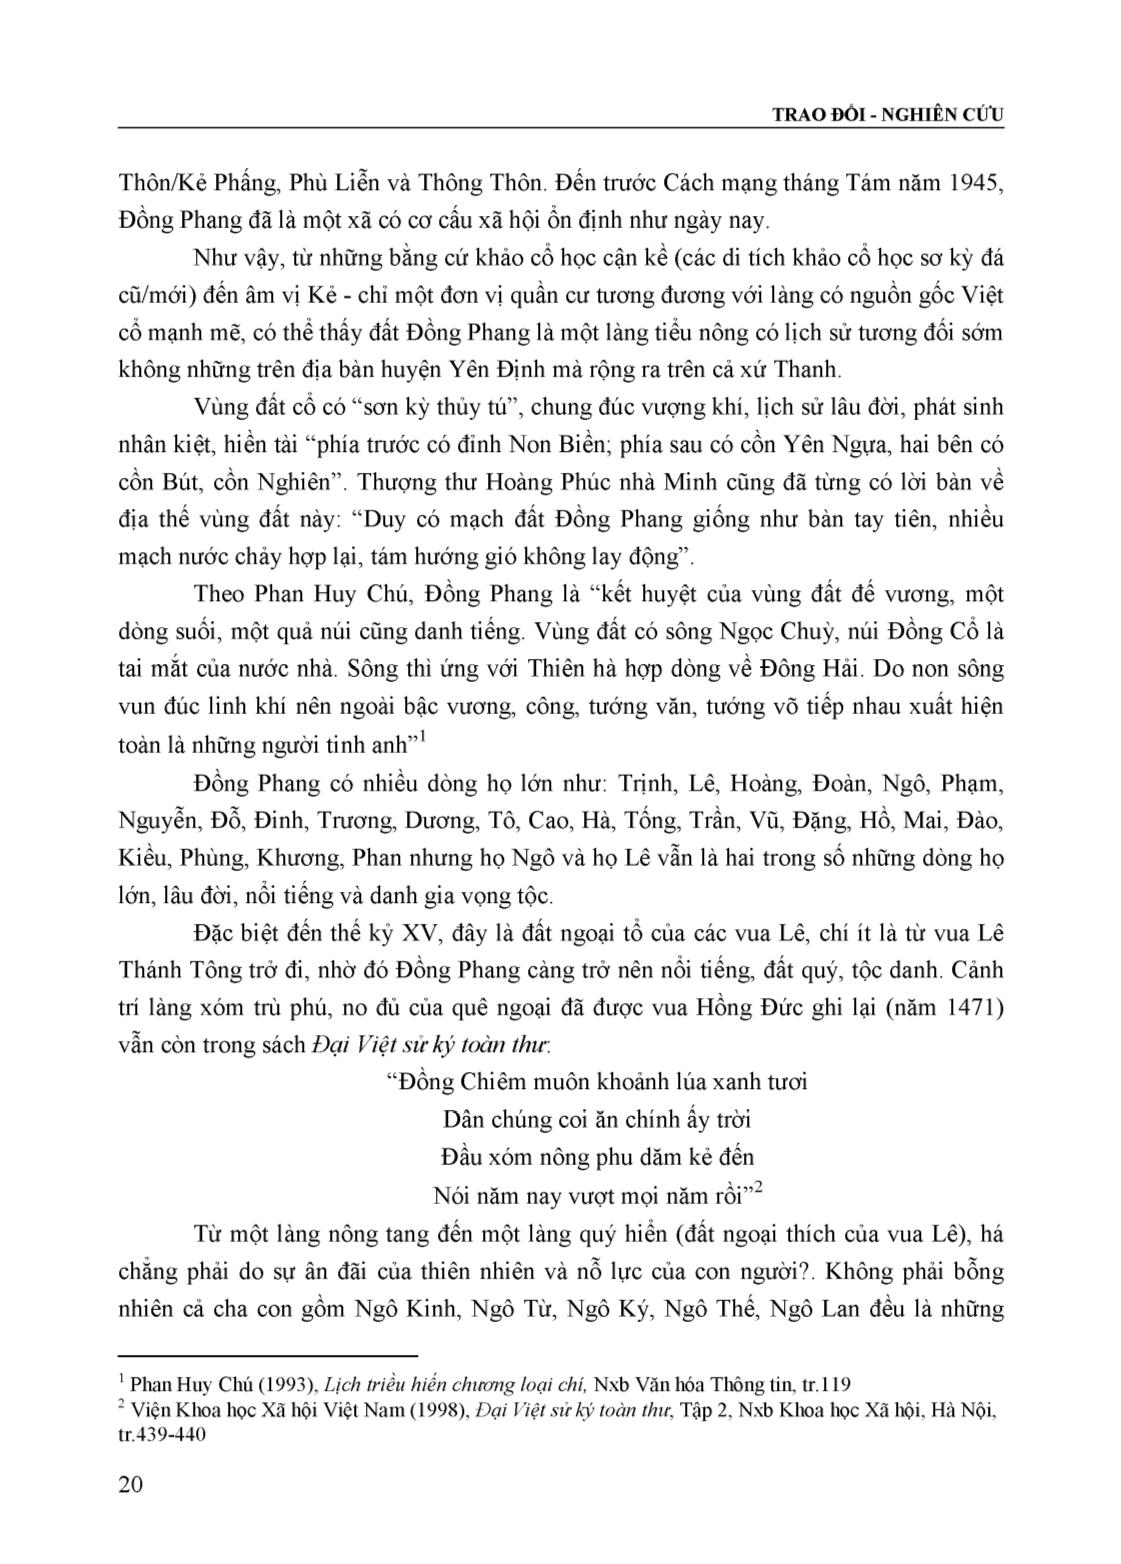 Dòng họ Ngô ở Đồng Phang xã Định Hòa, huyện Yên Định (Lịch sử và di tích) trang 2